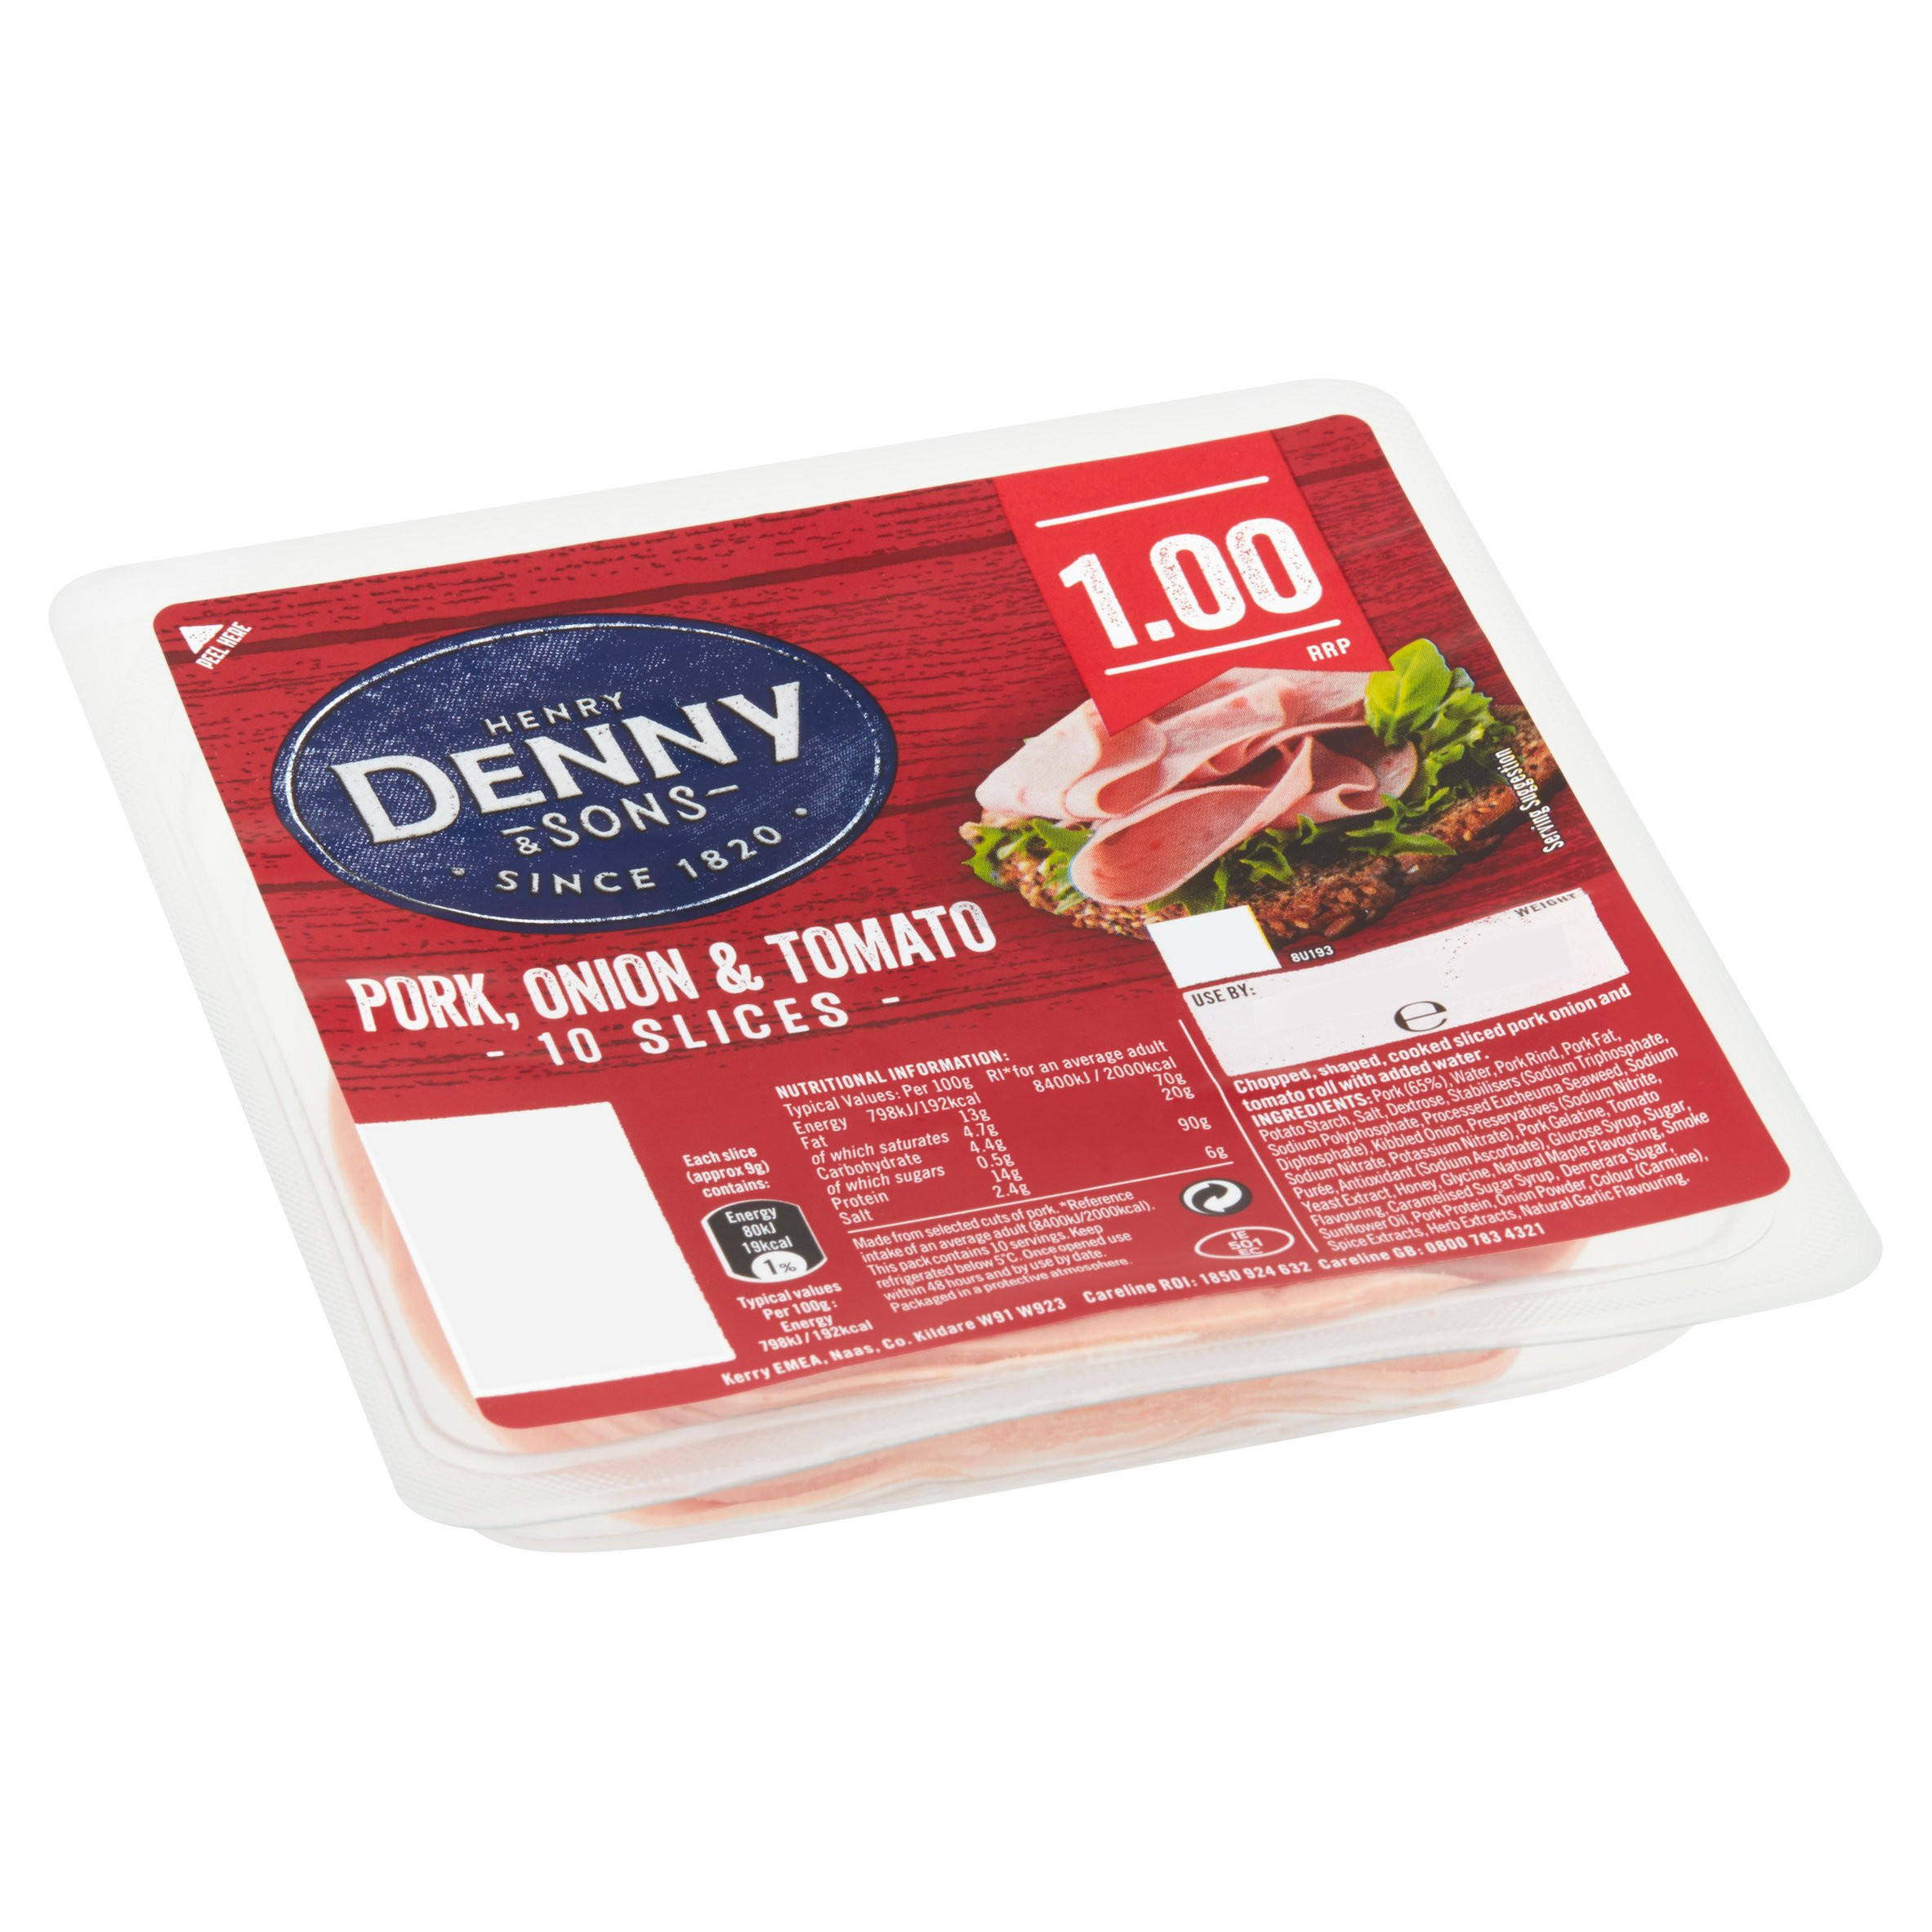 Henry Denny & Sons Pork, Onion & Tomato Slices - 90g, 10ct